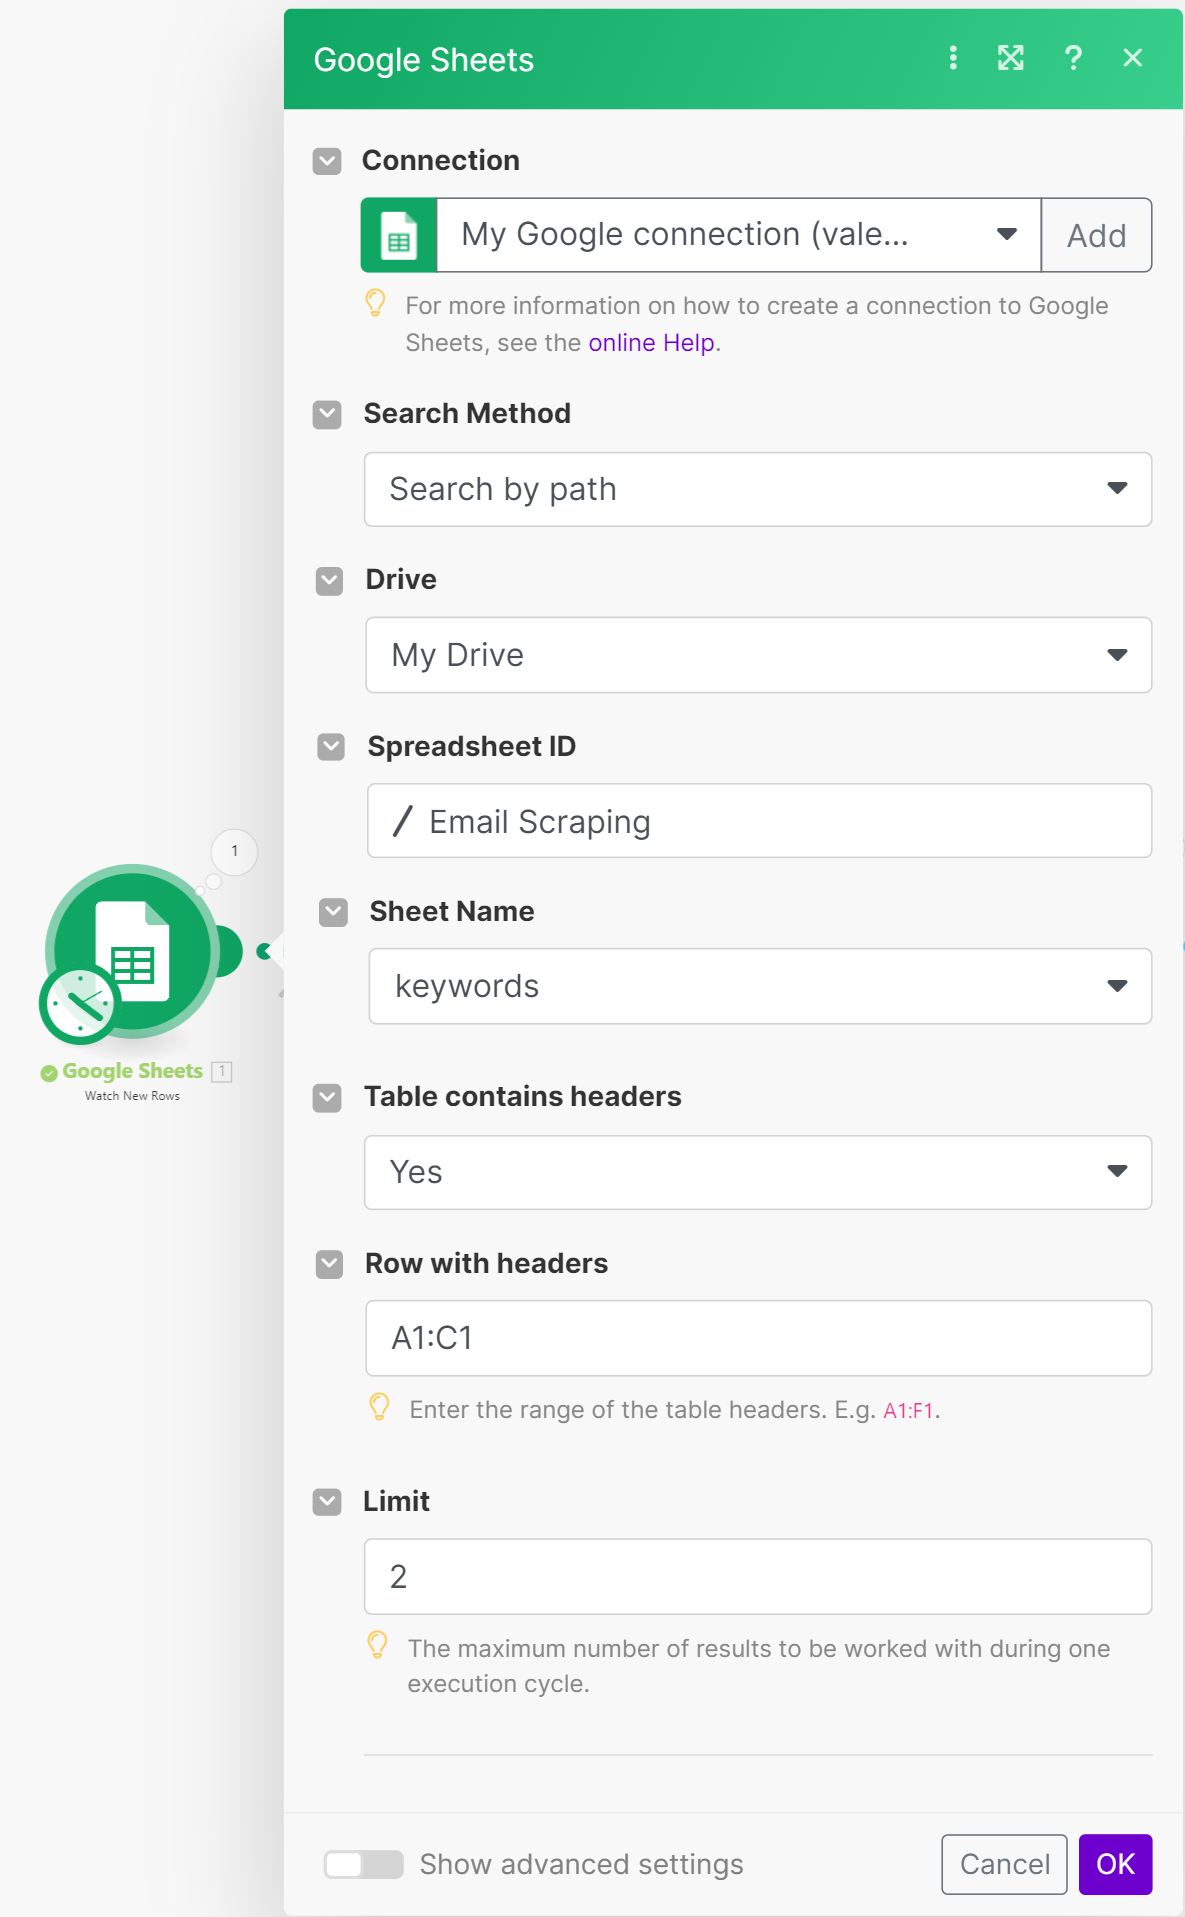 Pilih tindakan baru dan temukan integrasi dan metode Google Spreadsheet untuk mencari baris baru